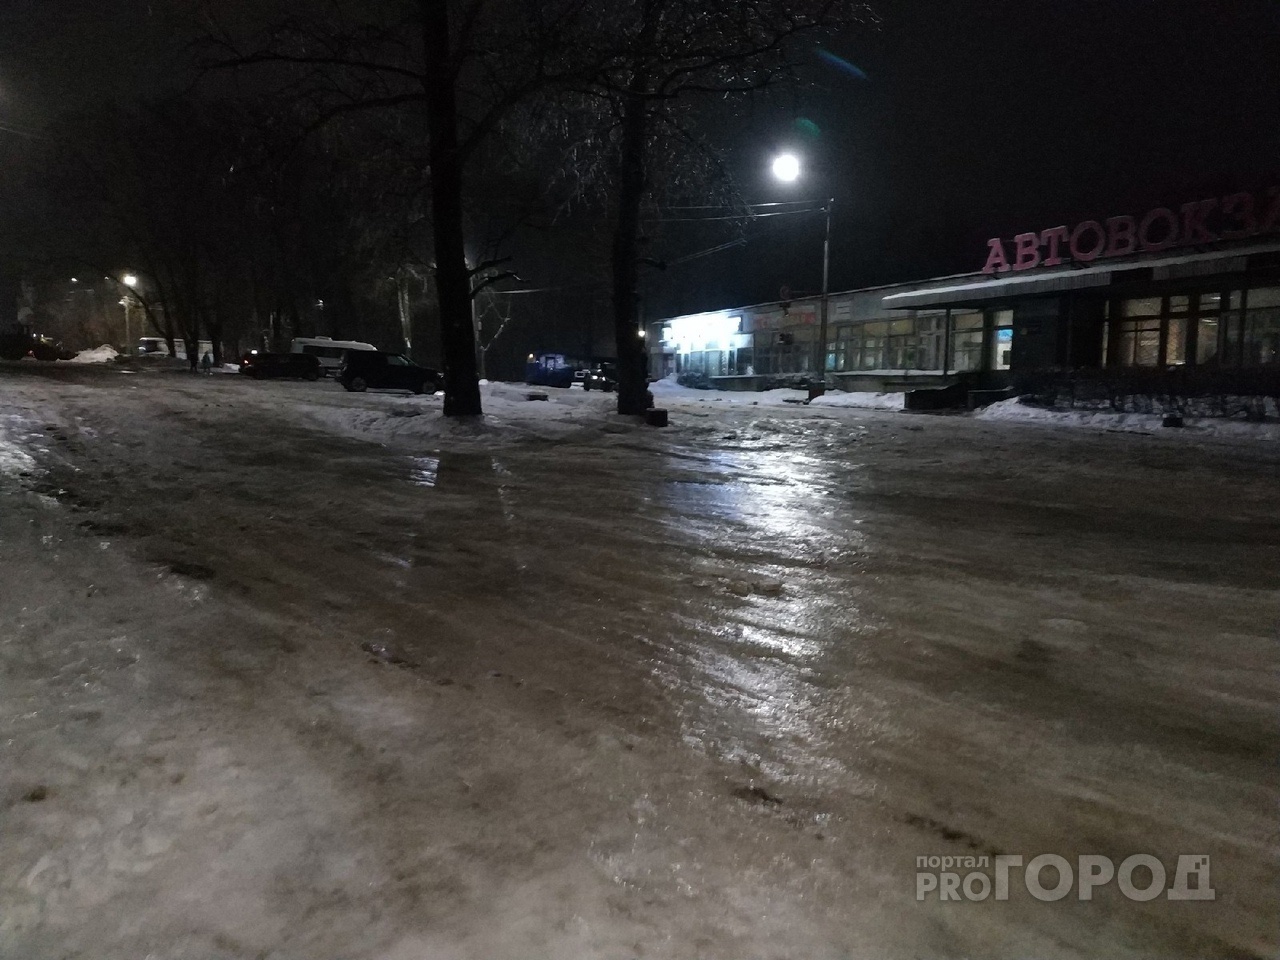 Дождь и гололедица: метеорологи рассказали о погоде в Кирово-Чепецке 6 и 7 апреля